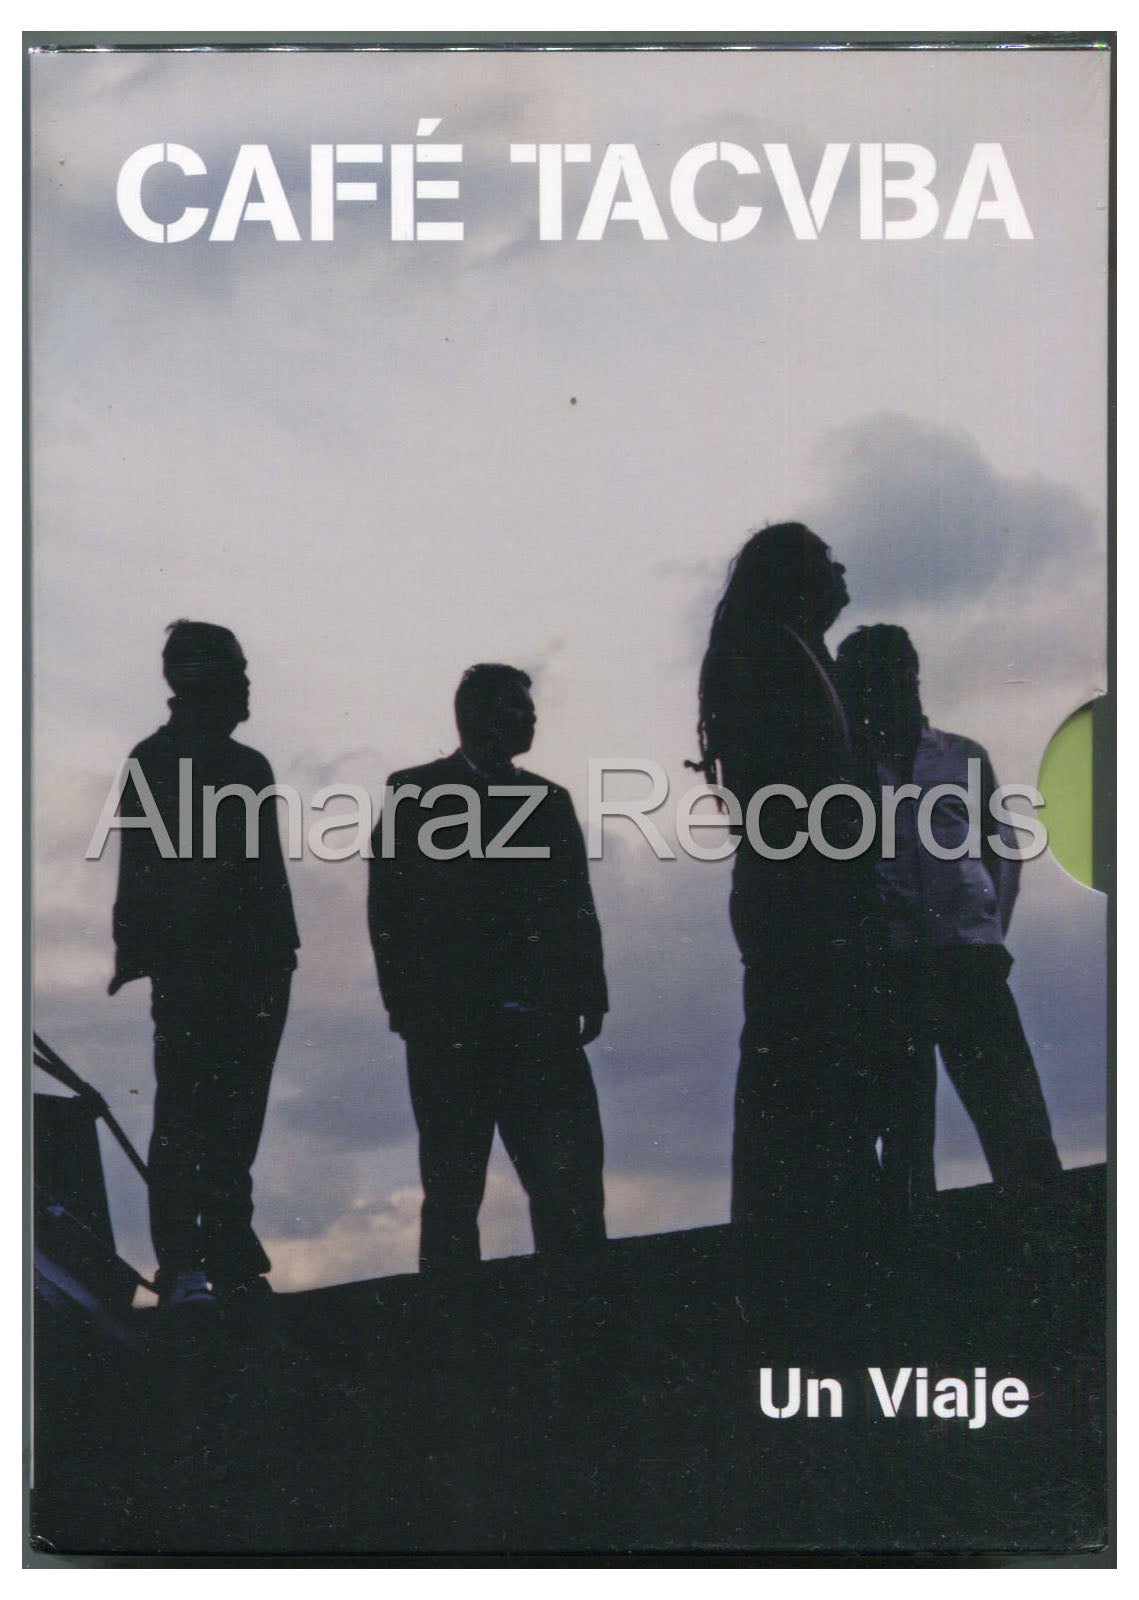 Cafe Tacuba Un Viaje 3CD+DVD - Cafe Tacvba - Almaraz Records | Tienda de Discos y Películas
 - 1